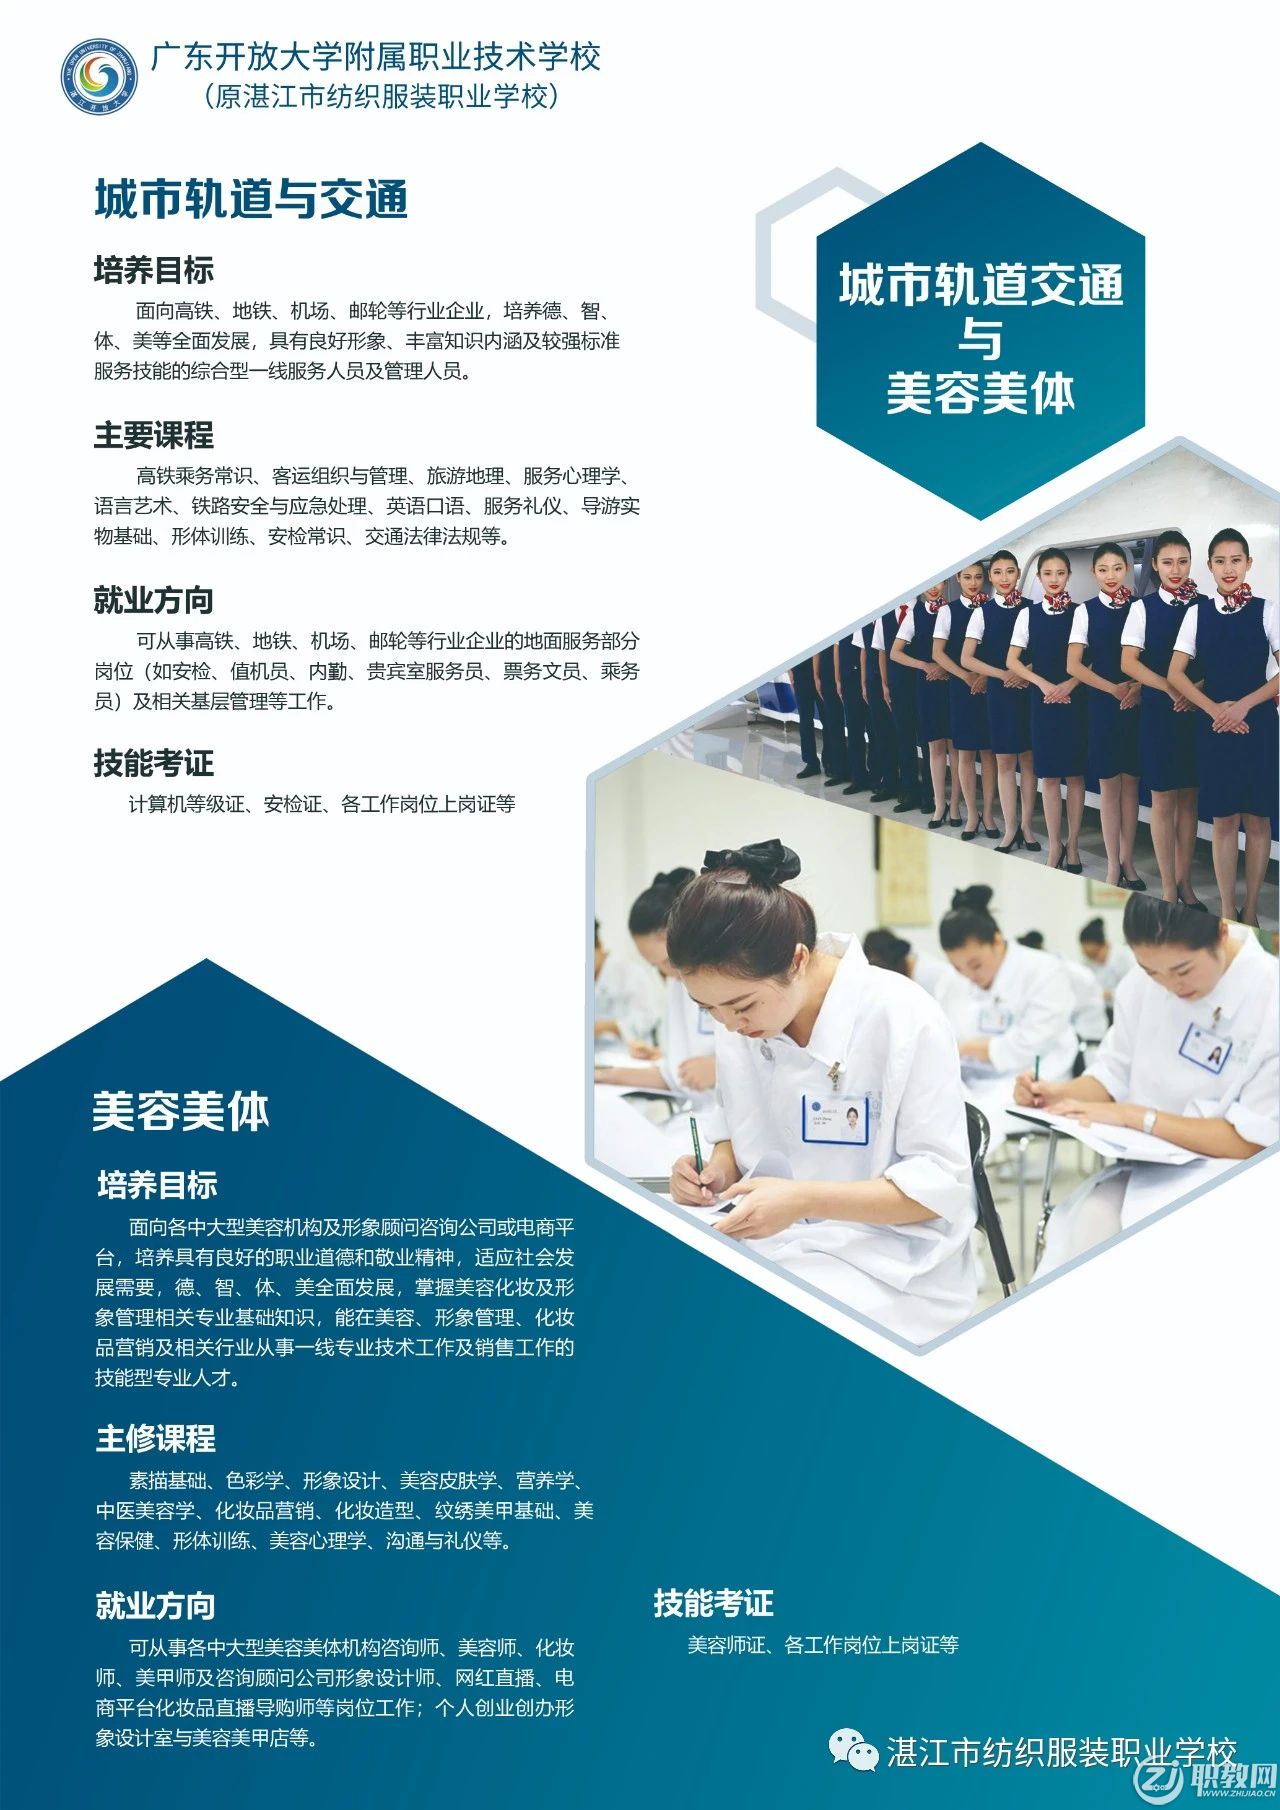 湛江市纺织服装职业学校-2020年招生简章-4.jpg